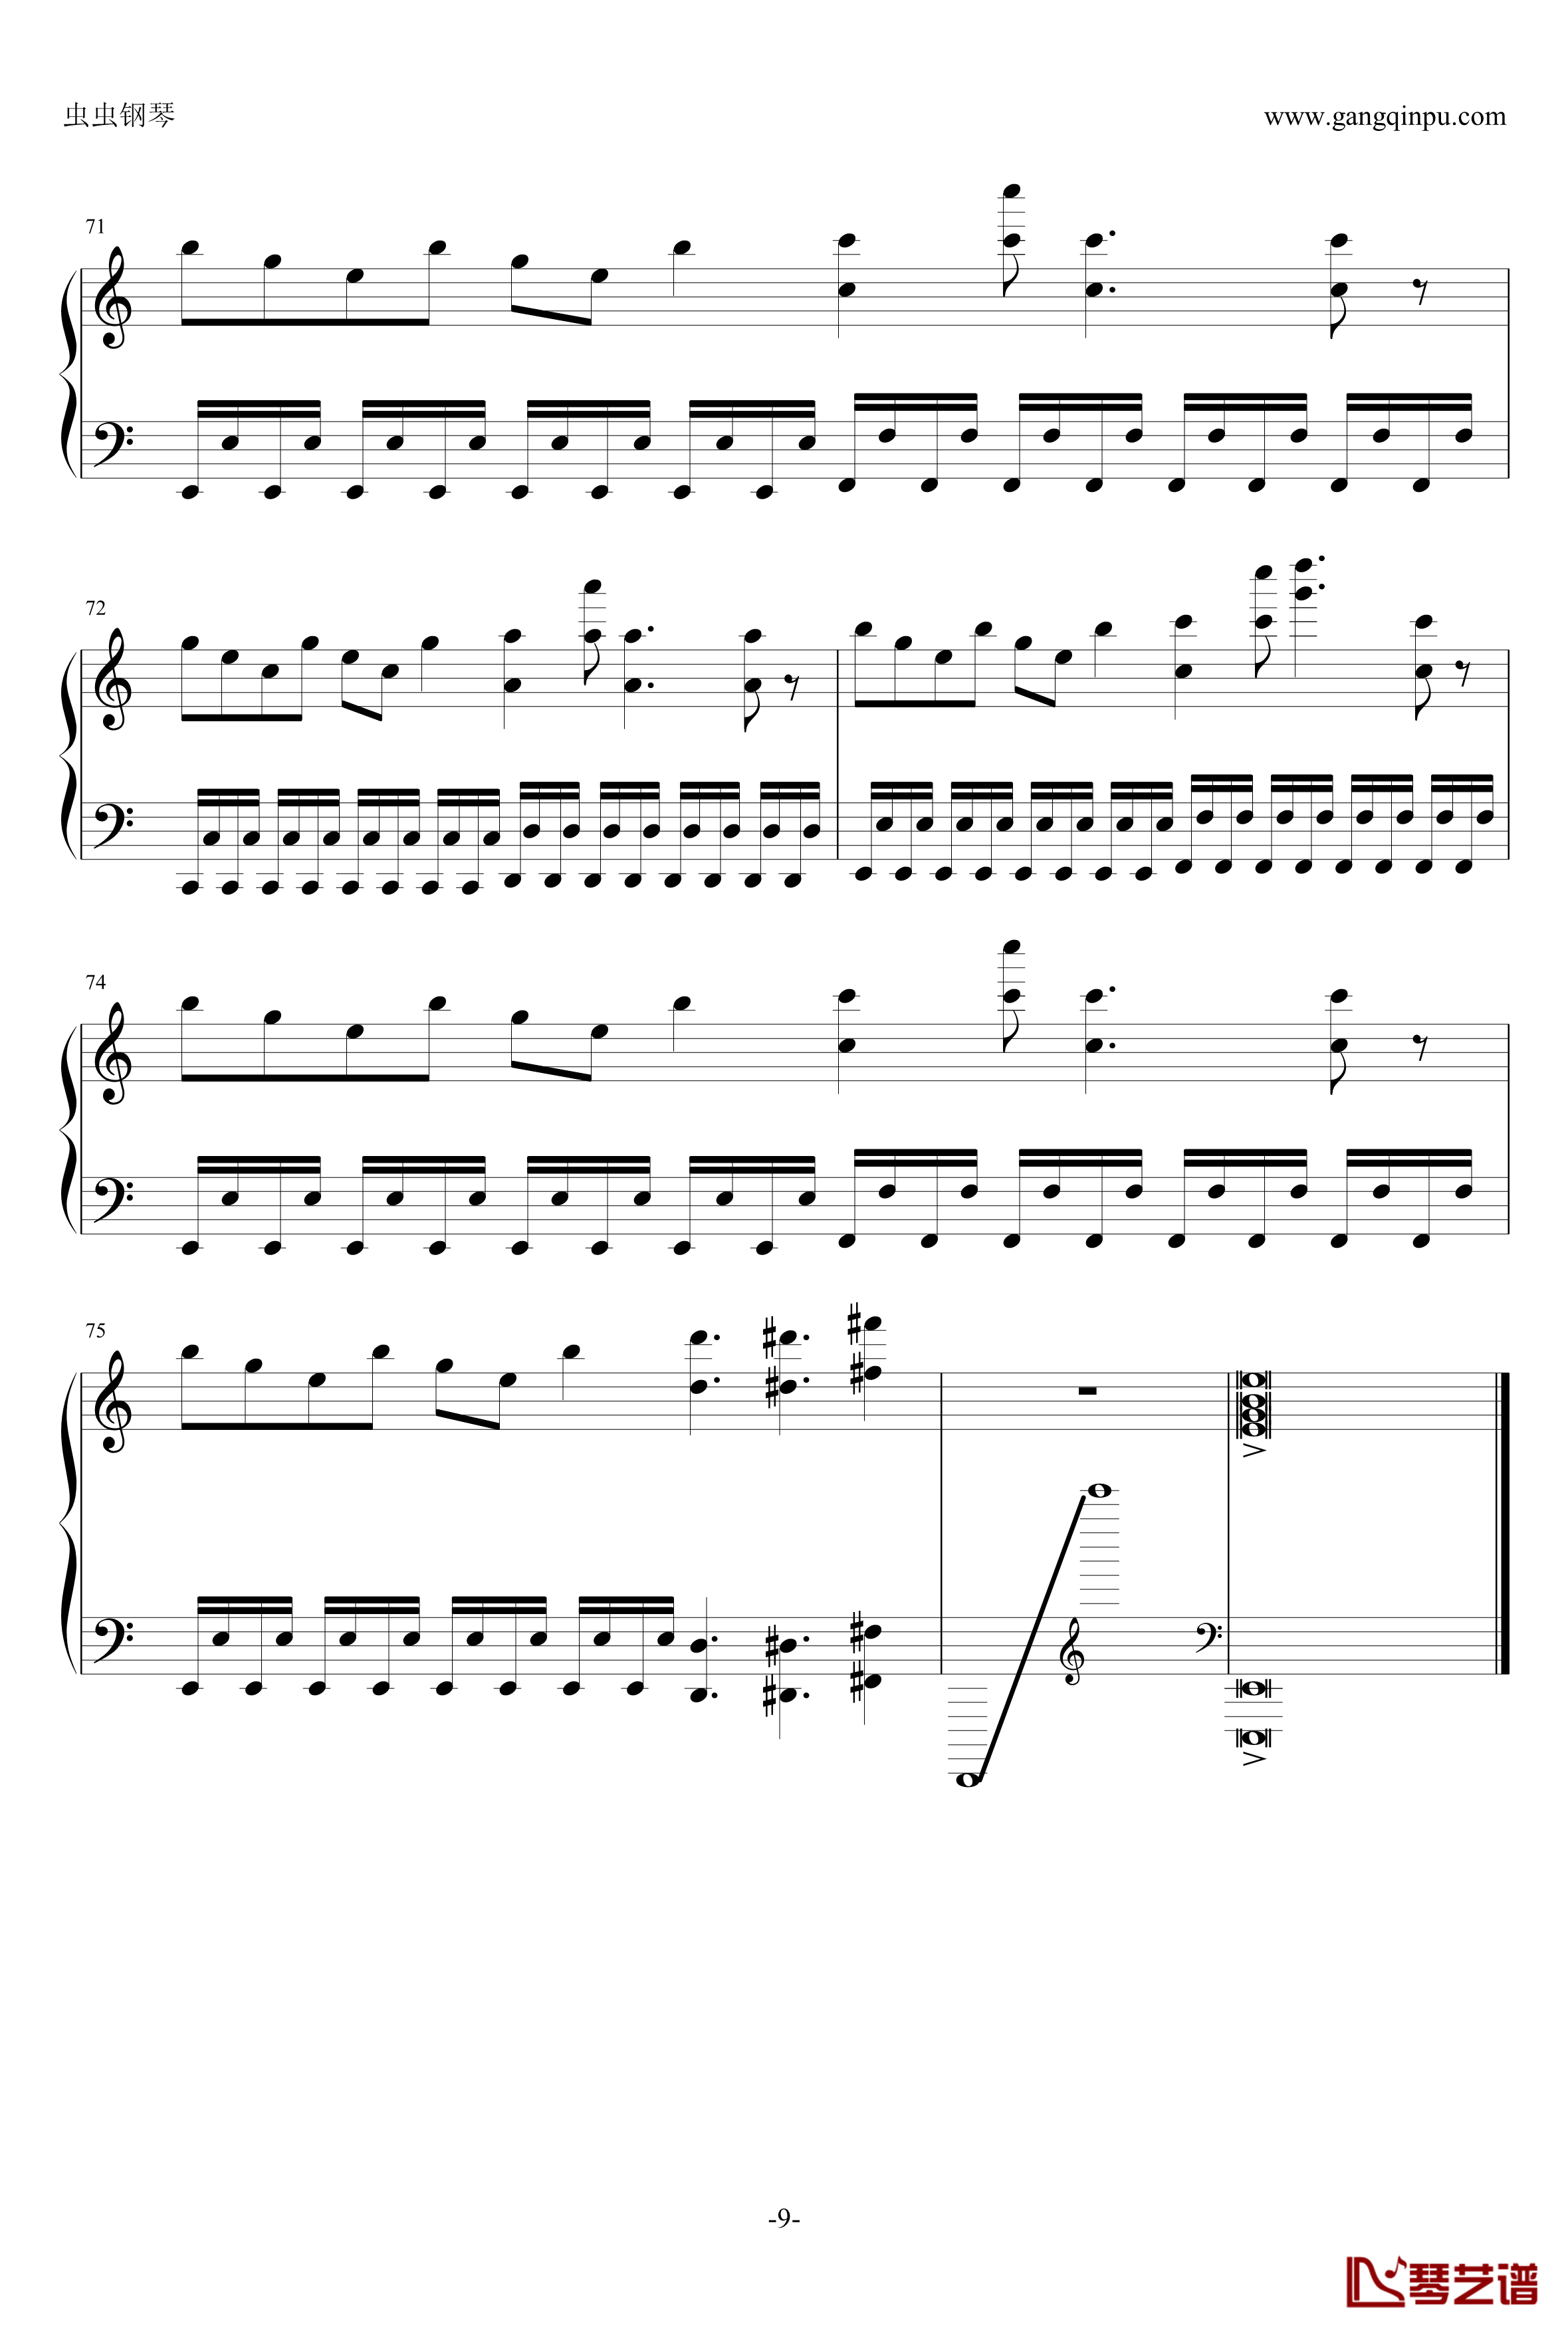 死亡华尔兹钢琴谱-简单版-人类可以弹-最终鬼畜9